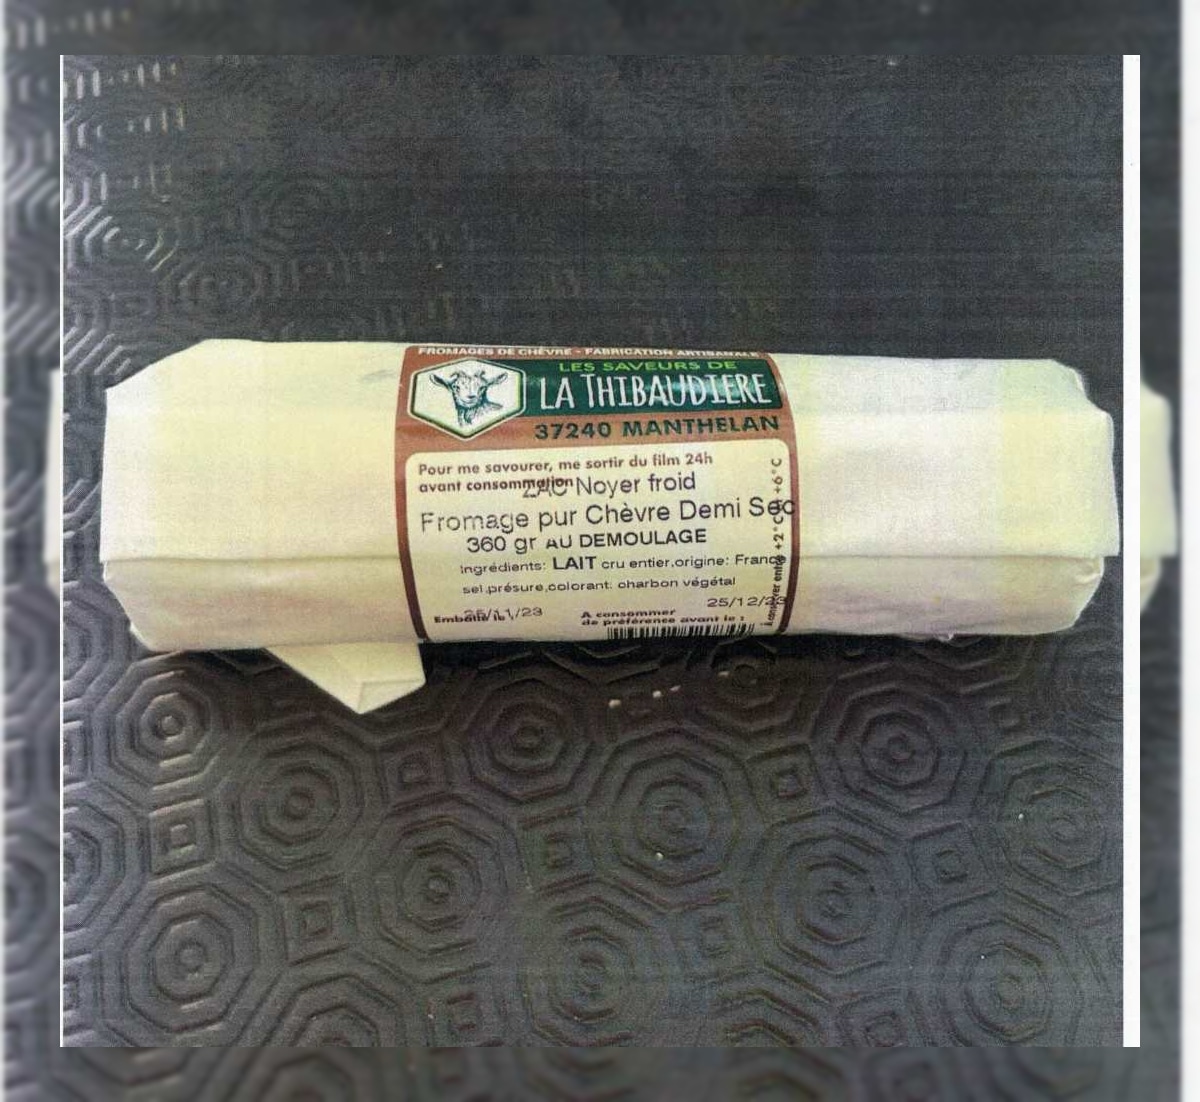 Rappel de produit : le fromage demi sec pur chèvre ‘Les Saveurs de la Thibaudiere’ de 360gr retiré du marché